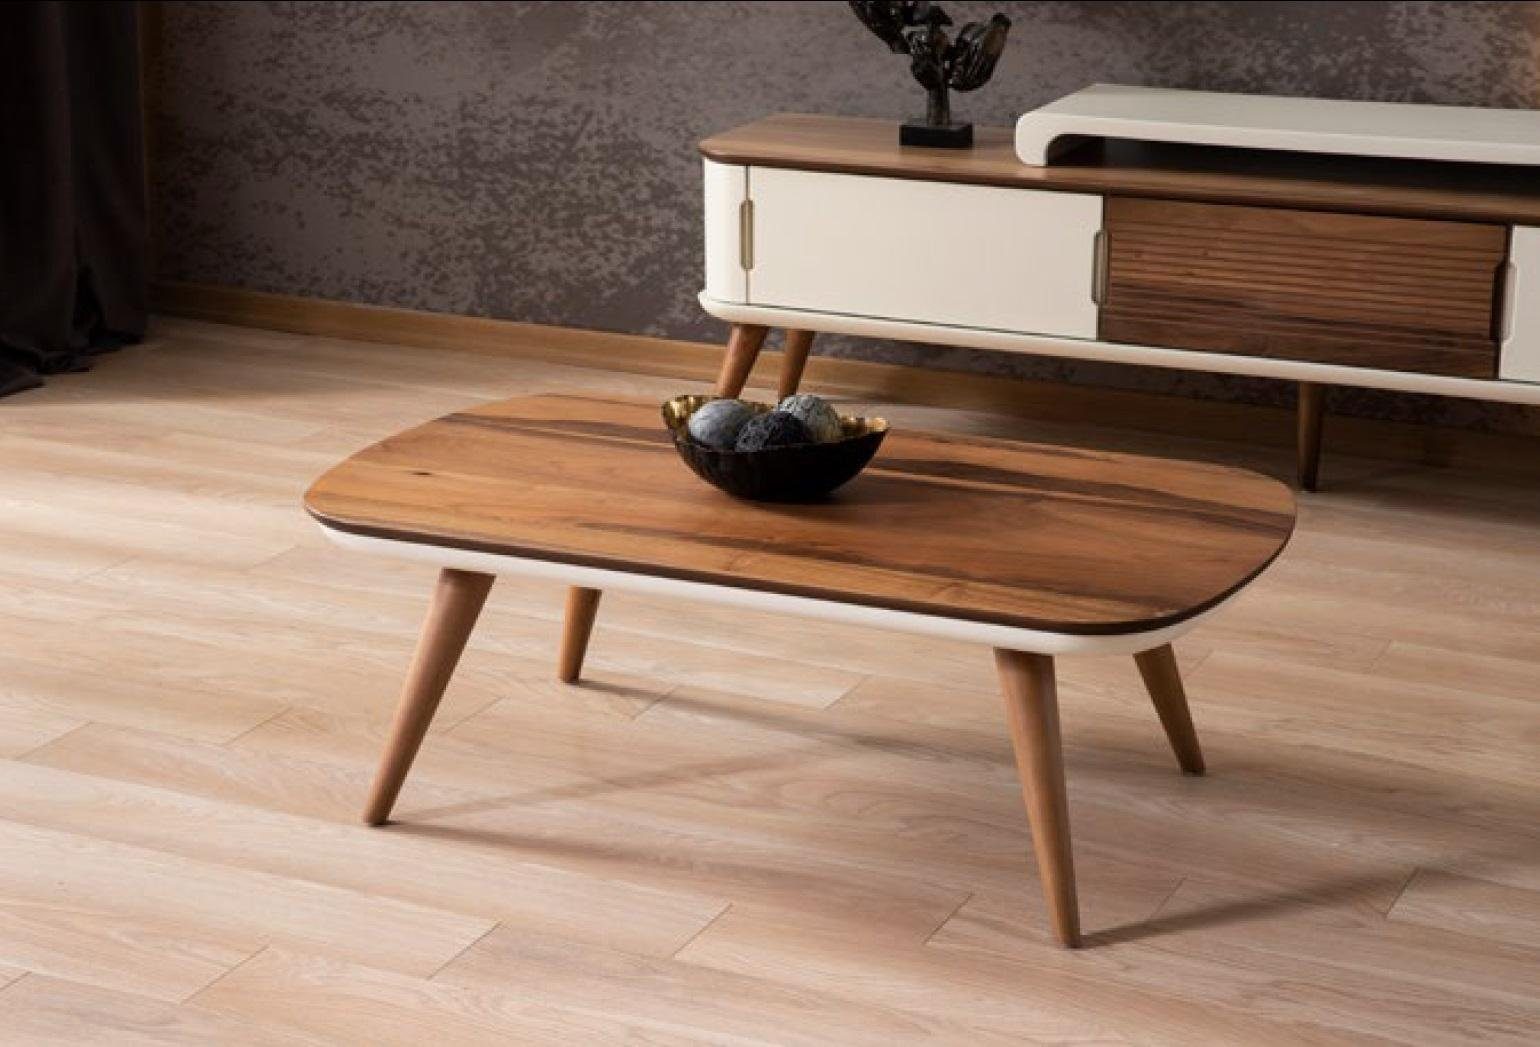 JVmoebel Couchtisch, Couchtisch Tisch Beistelltisch Wohnzimmer Holz Modern Luxus Braun Neu